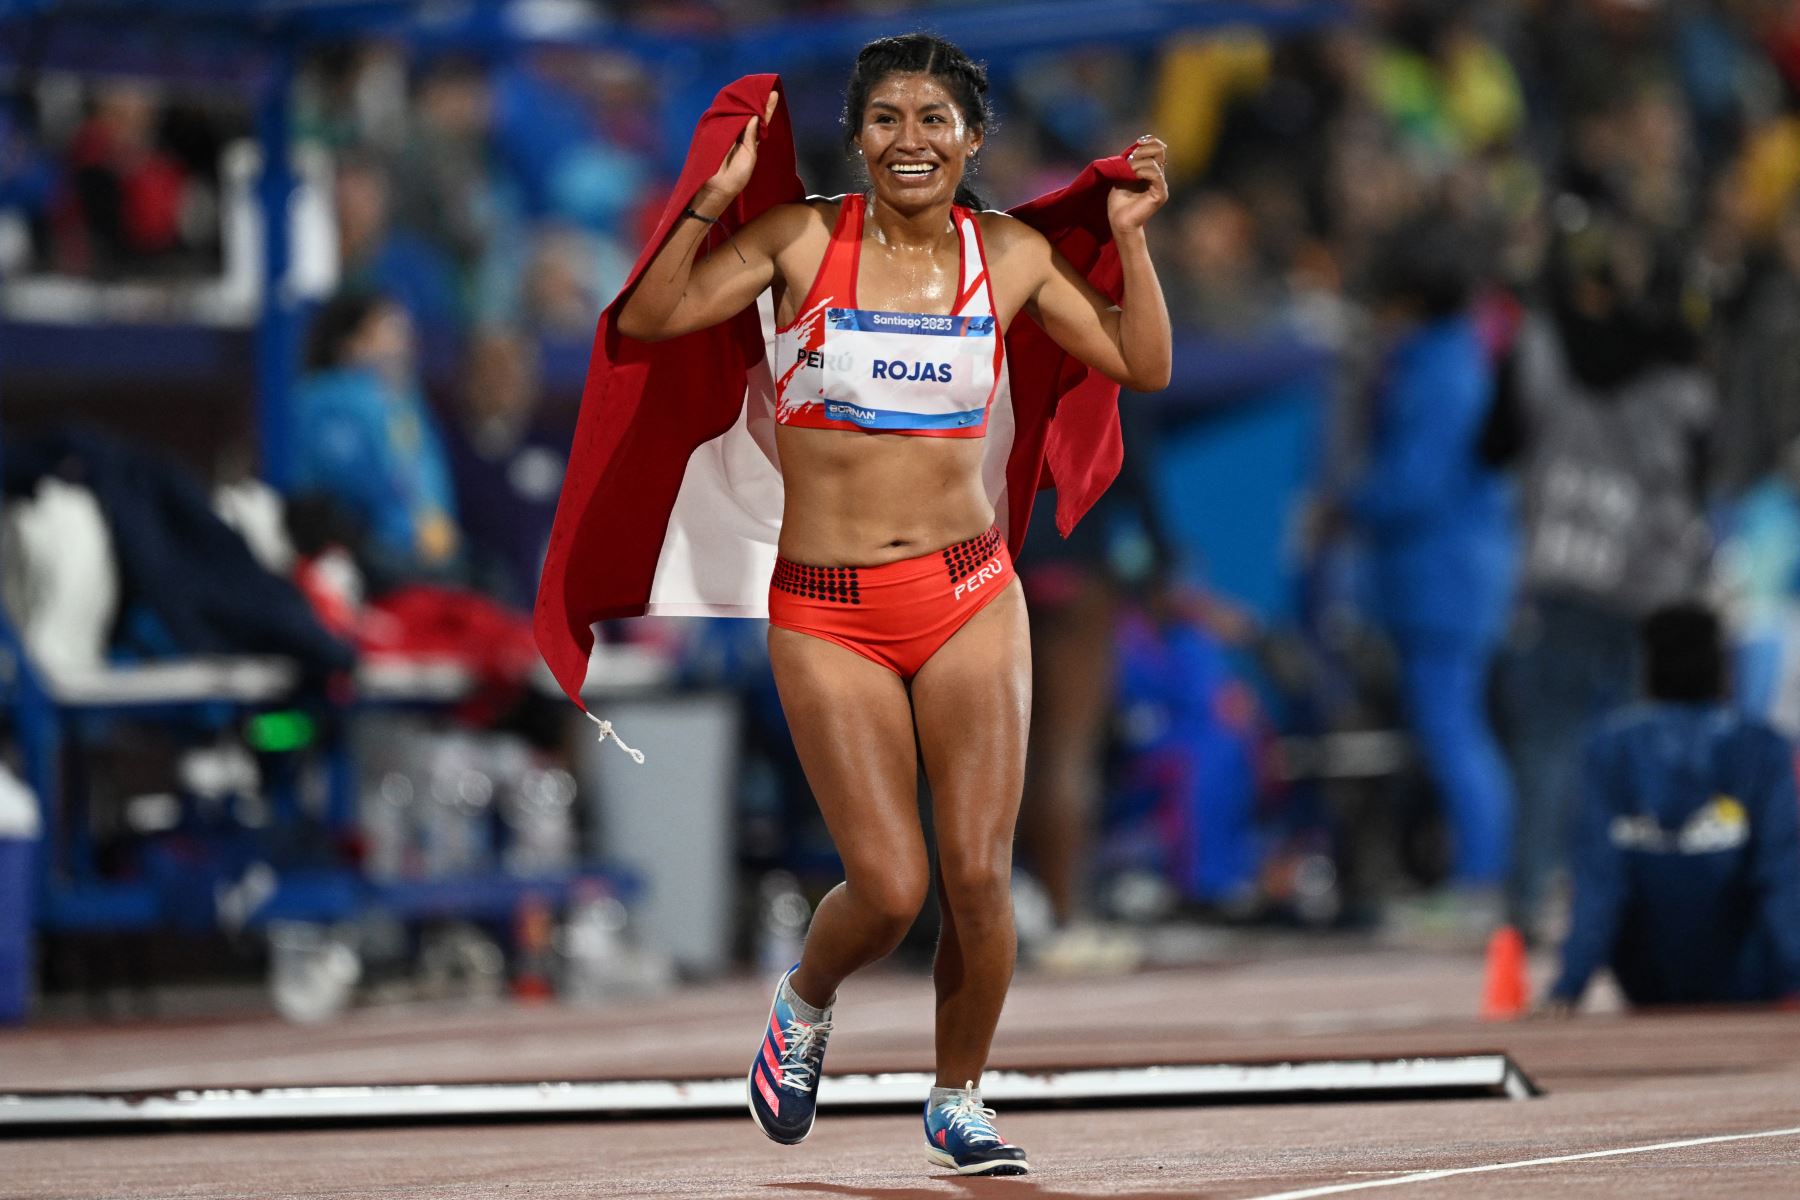 La peruana Luz Mery Rojas celebra tras ganar la medalla de oro en Santiago 2023. La ciudad de Barranquilla debía tomar la posta en 2027, pero incumplió contrato.